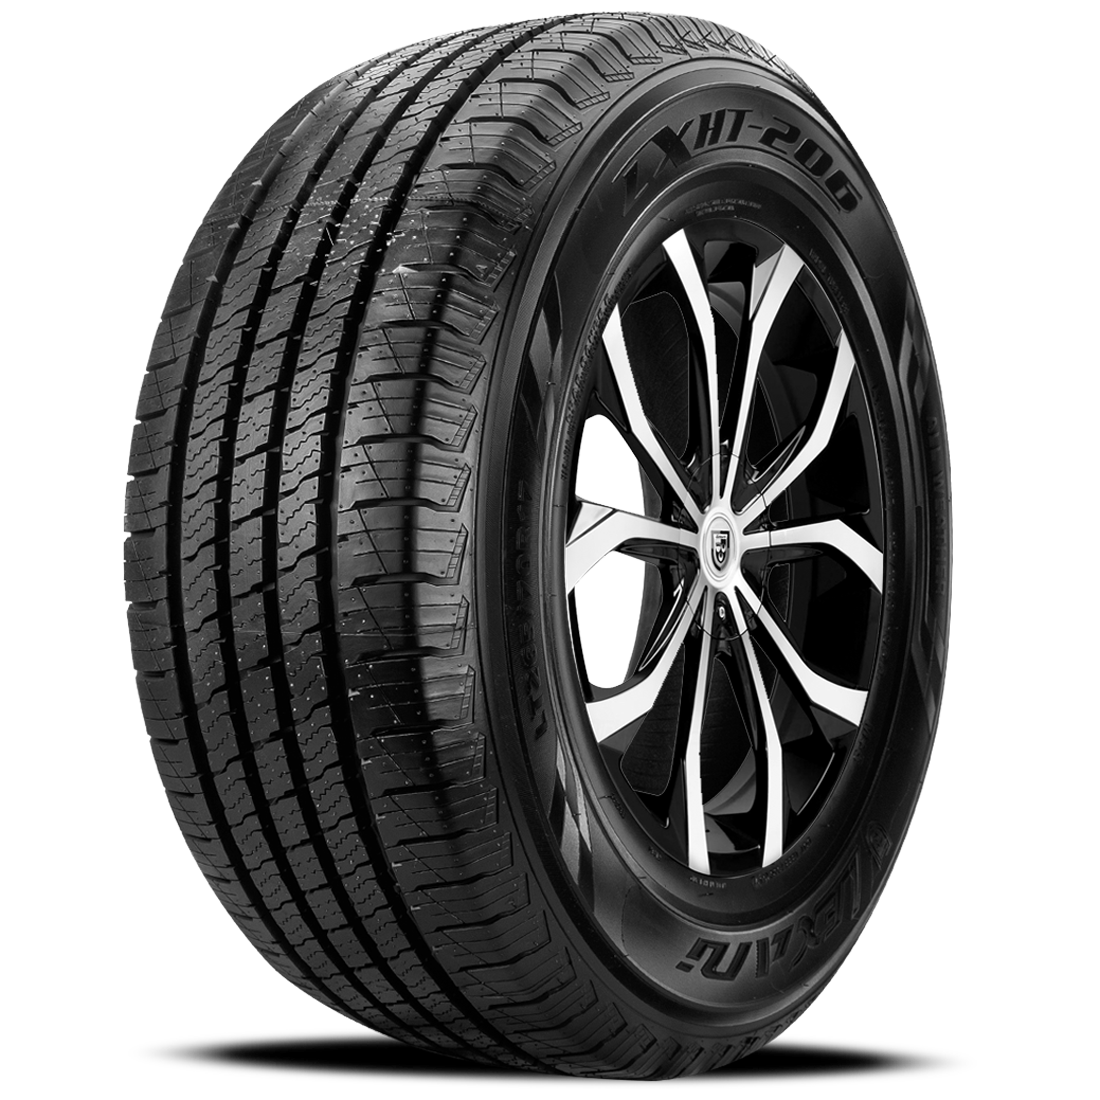 LEXANI LXHT-206 P265/70R16 (30.6X10.4R 16) Tires